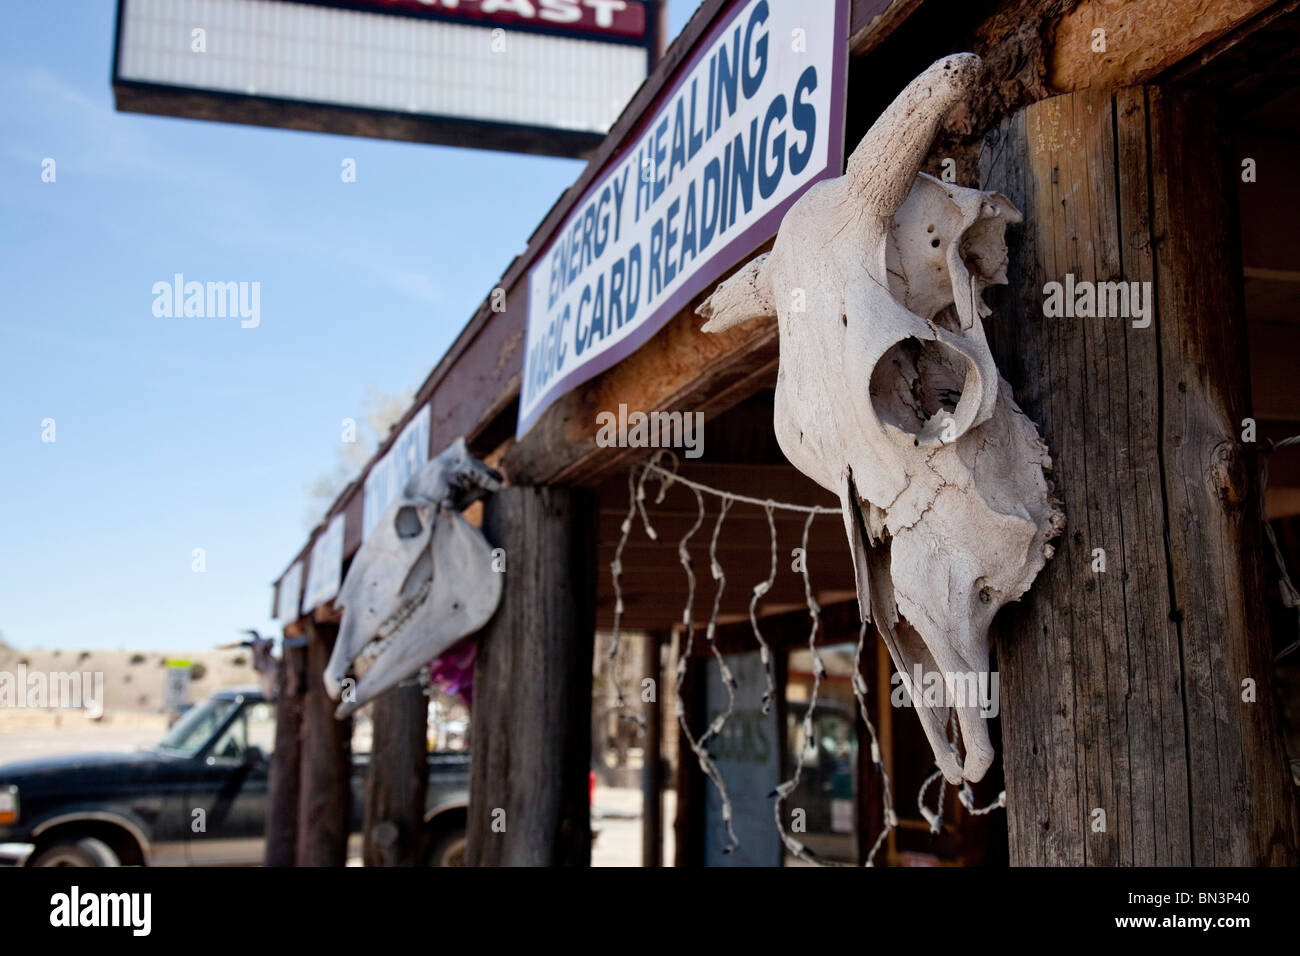 Des têtes d'animaux sur un bâtiment, Nouveau Mexique, USA, close-up Banque D'Images